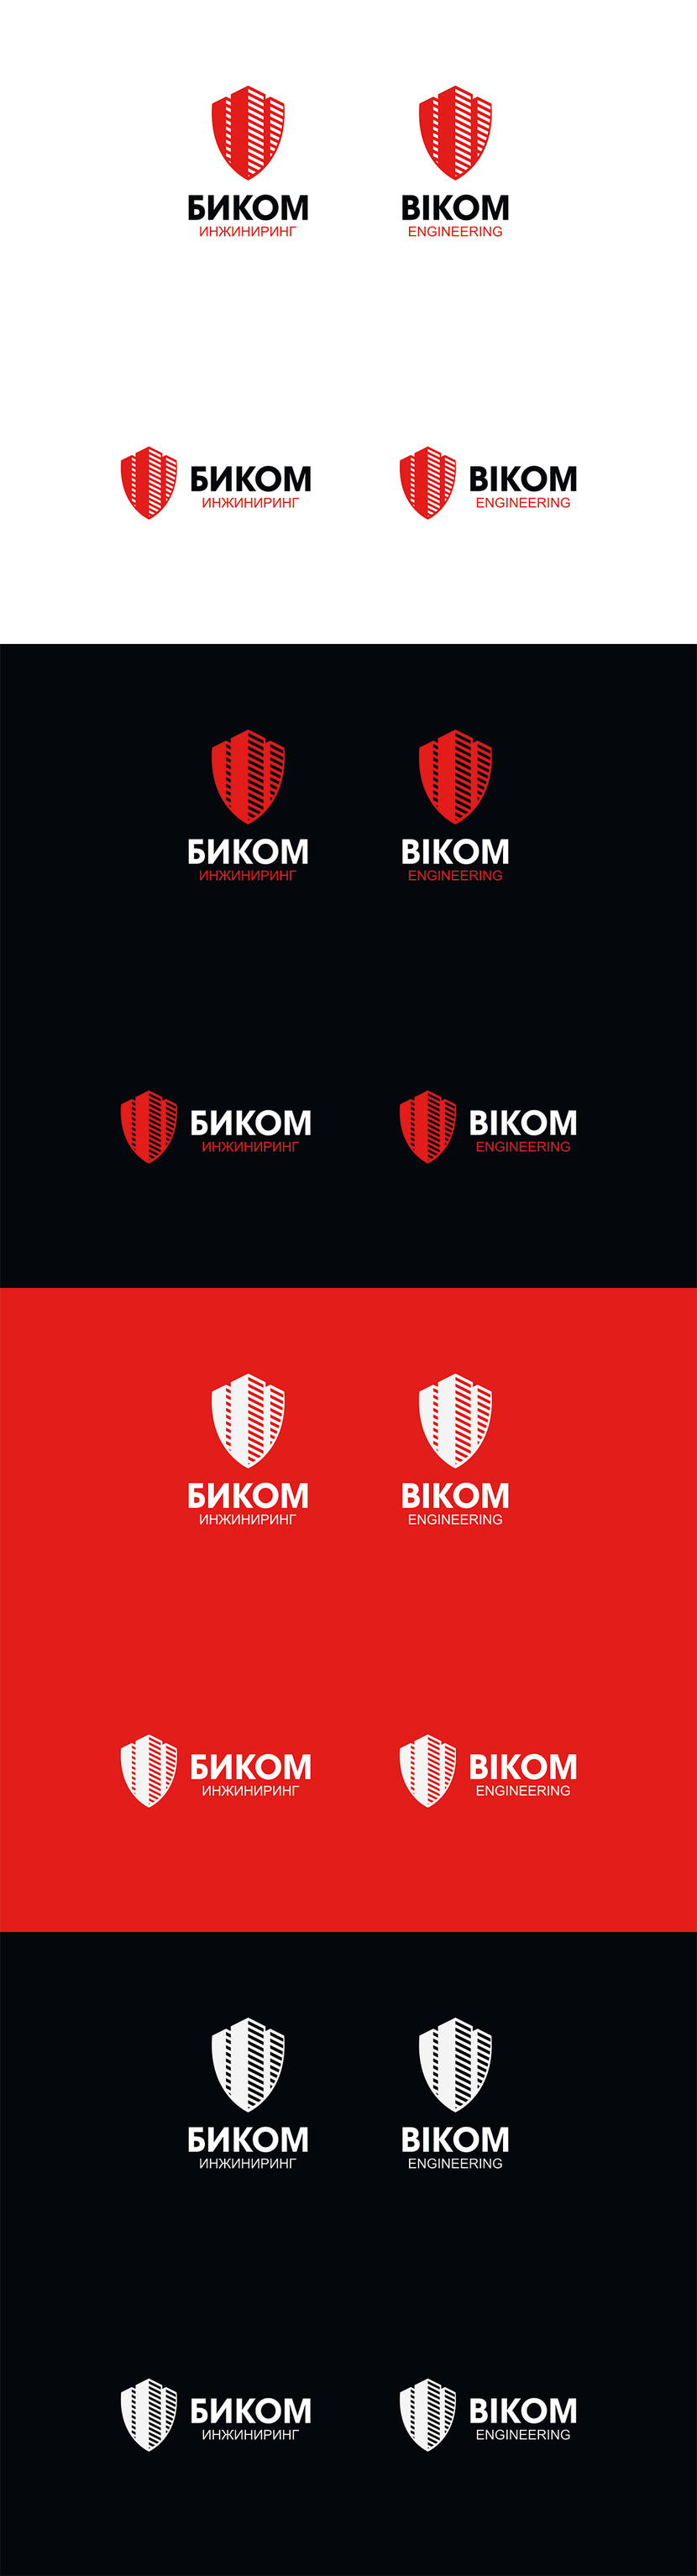 цвета и компоновка логотипа: - Создание логотипа и фирменного стиля для строительной компании.